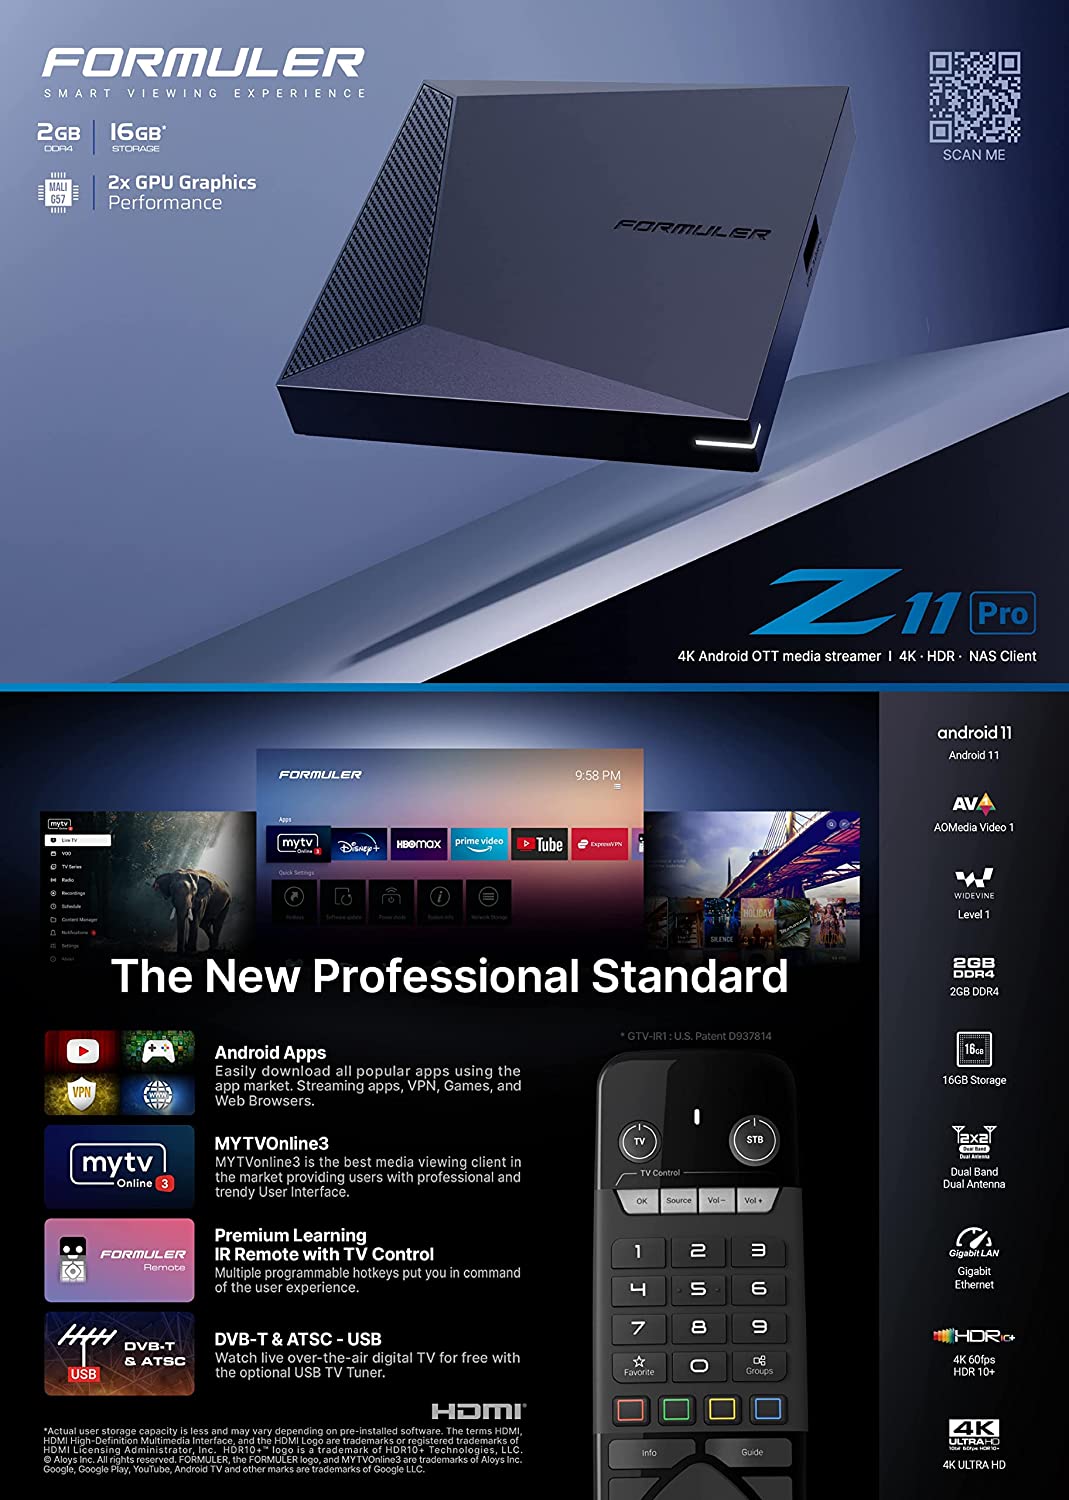 Formuler Z11 Pro + ACCESSOIRE GRATUIT : 1x Blue Remote Cover + 1x Hub USB